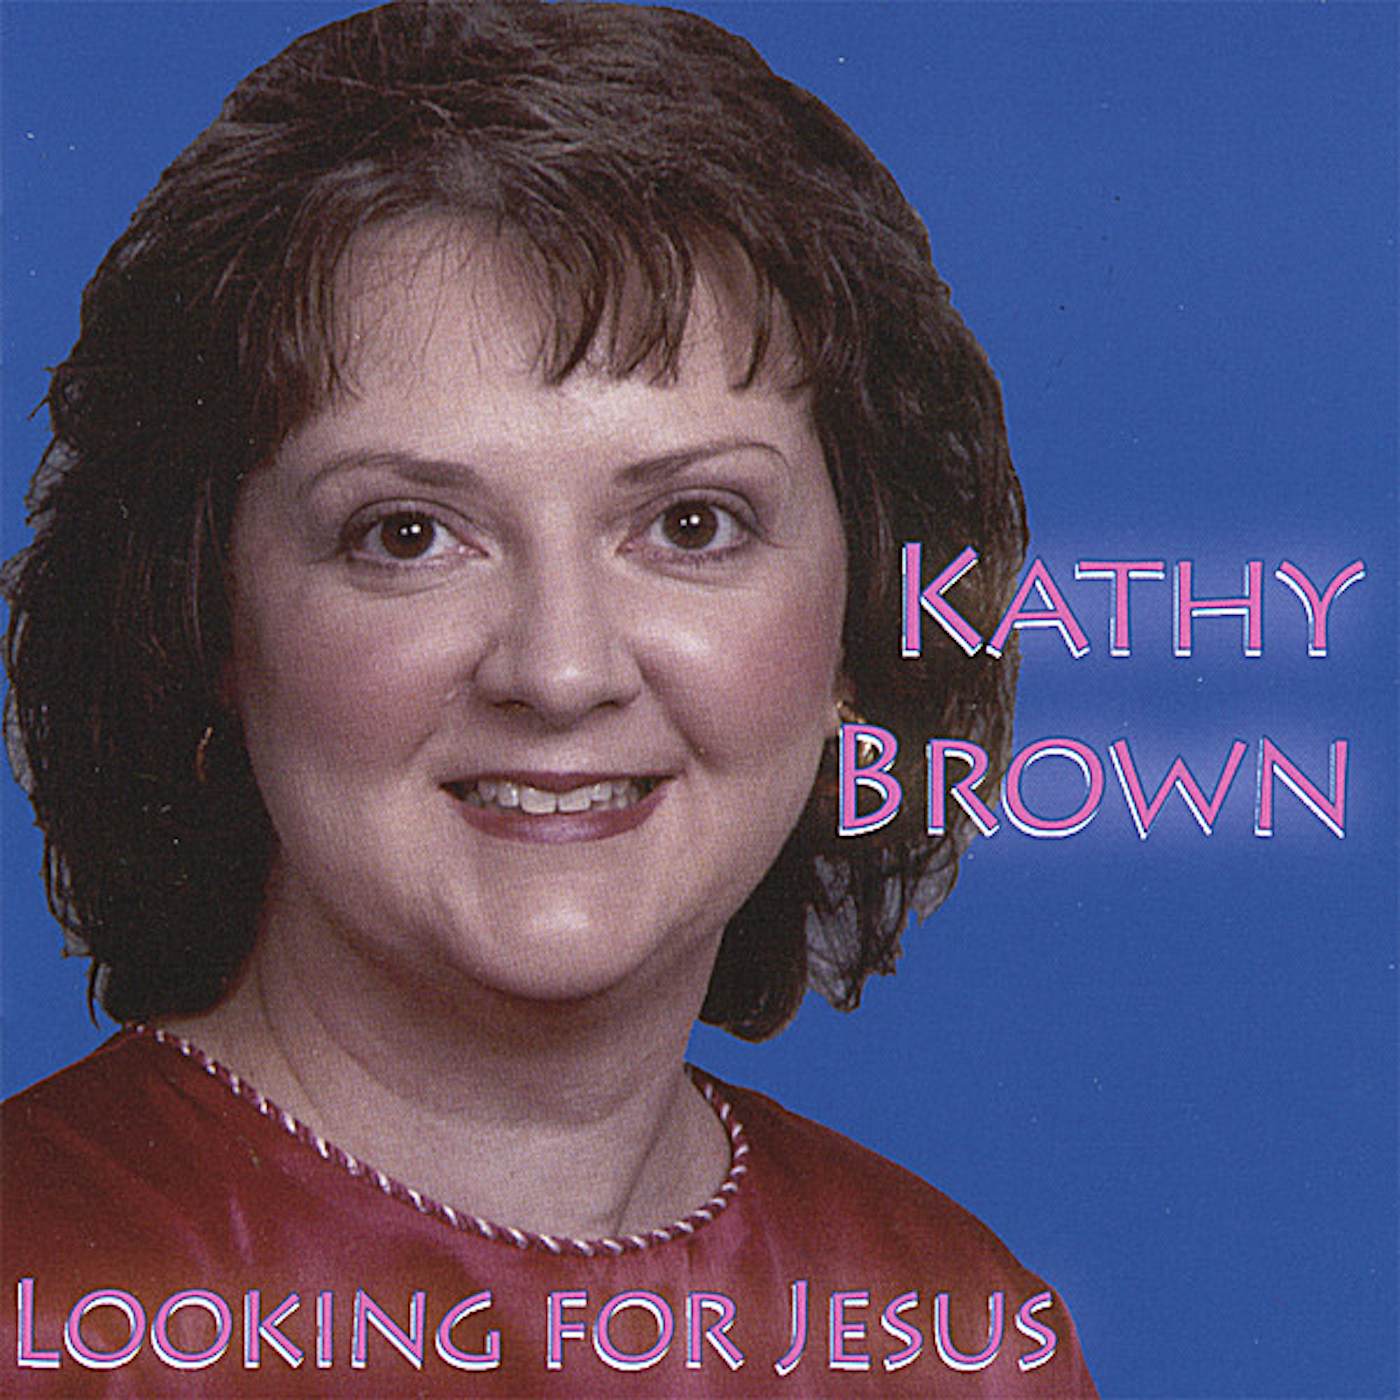 Kathy Brown LOOKING FOR JESUS CD